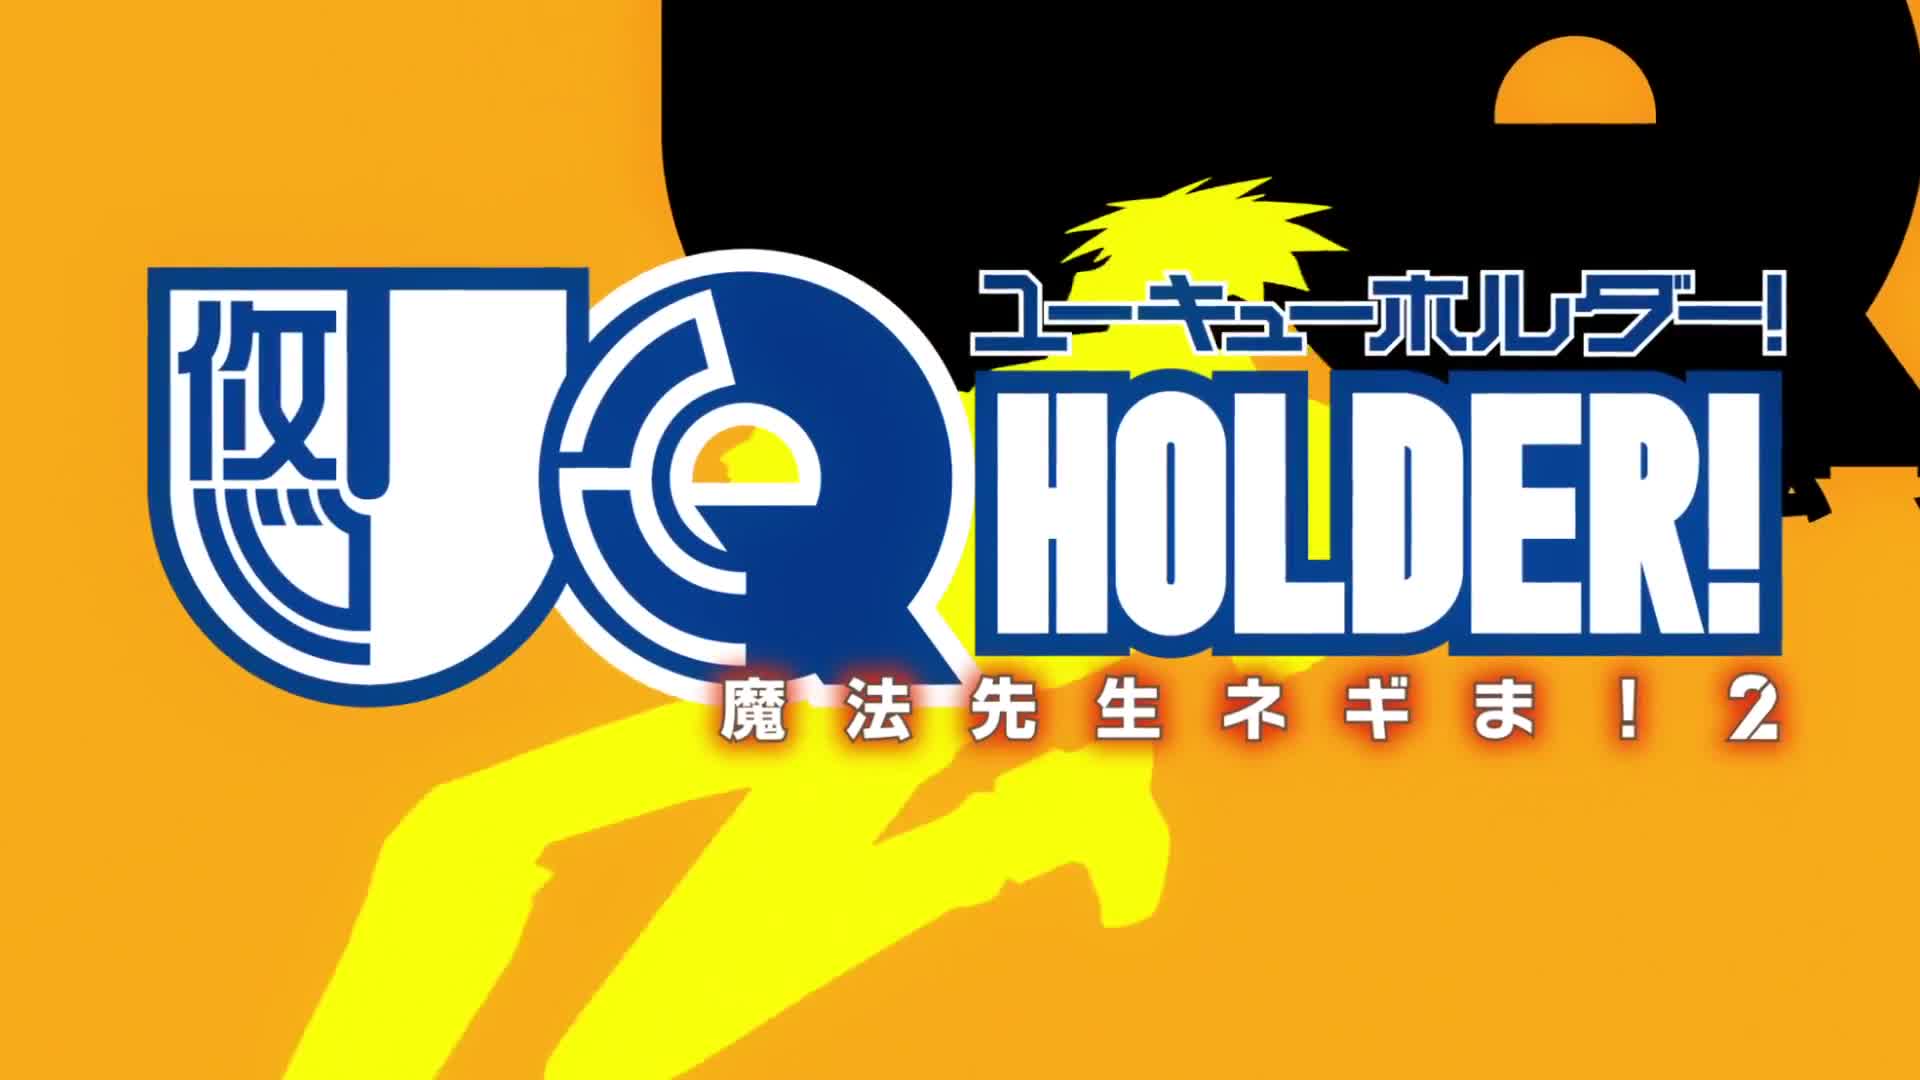 UQ Holder!: Mahou Sensei Negima! 2